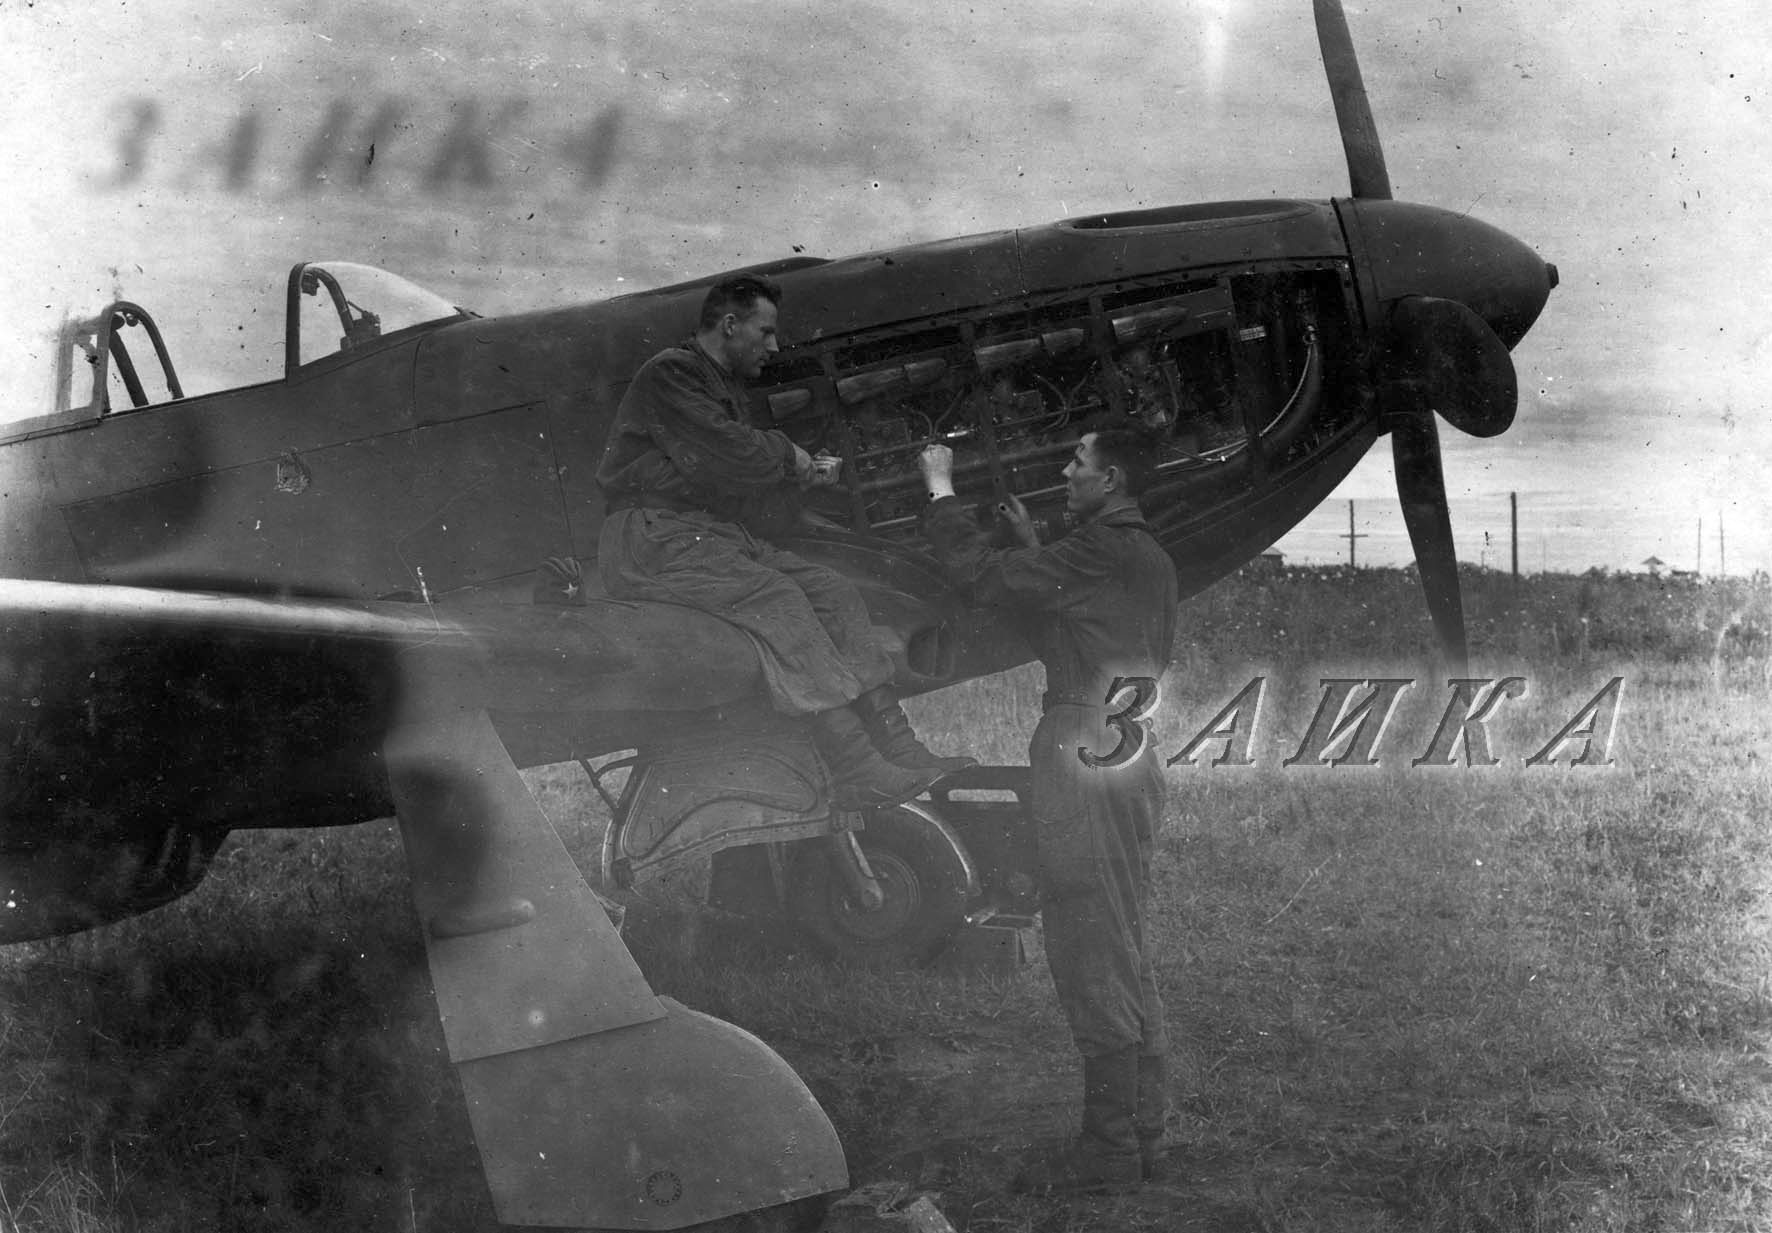 Russian Jak-3 photo WWII 534th IAP (air unit) USSR